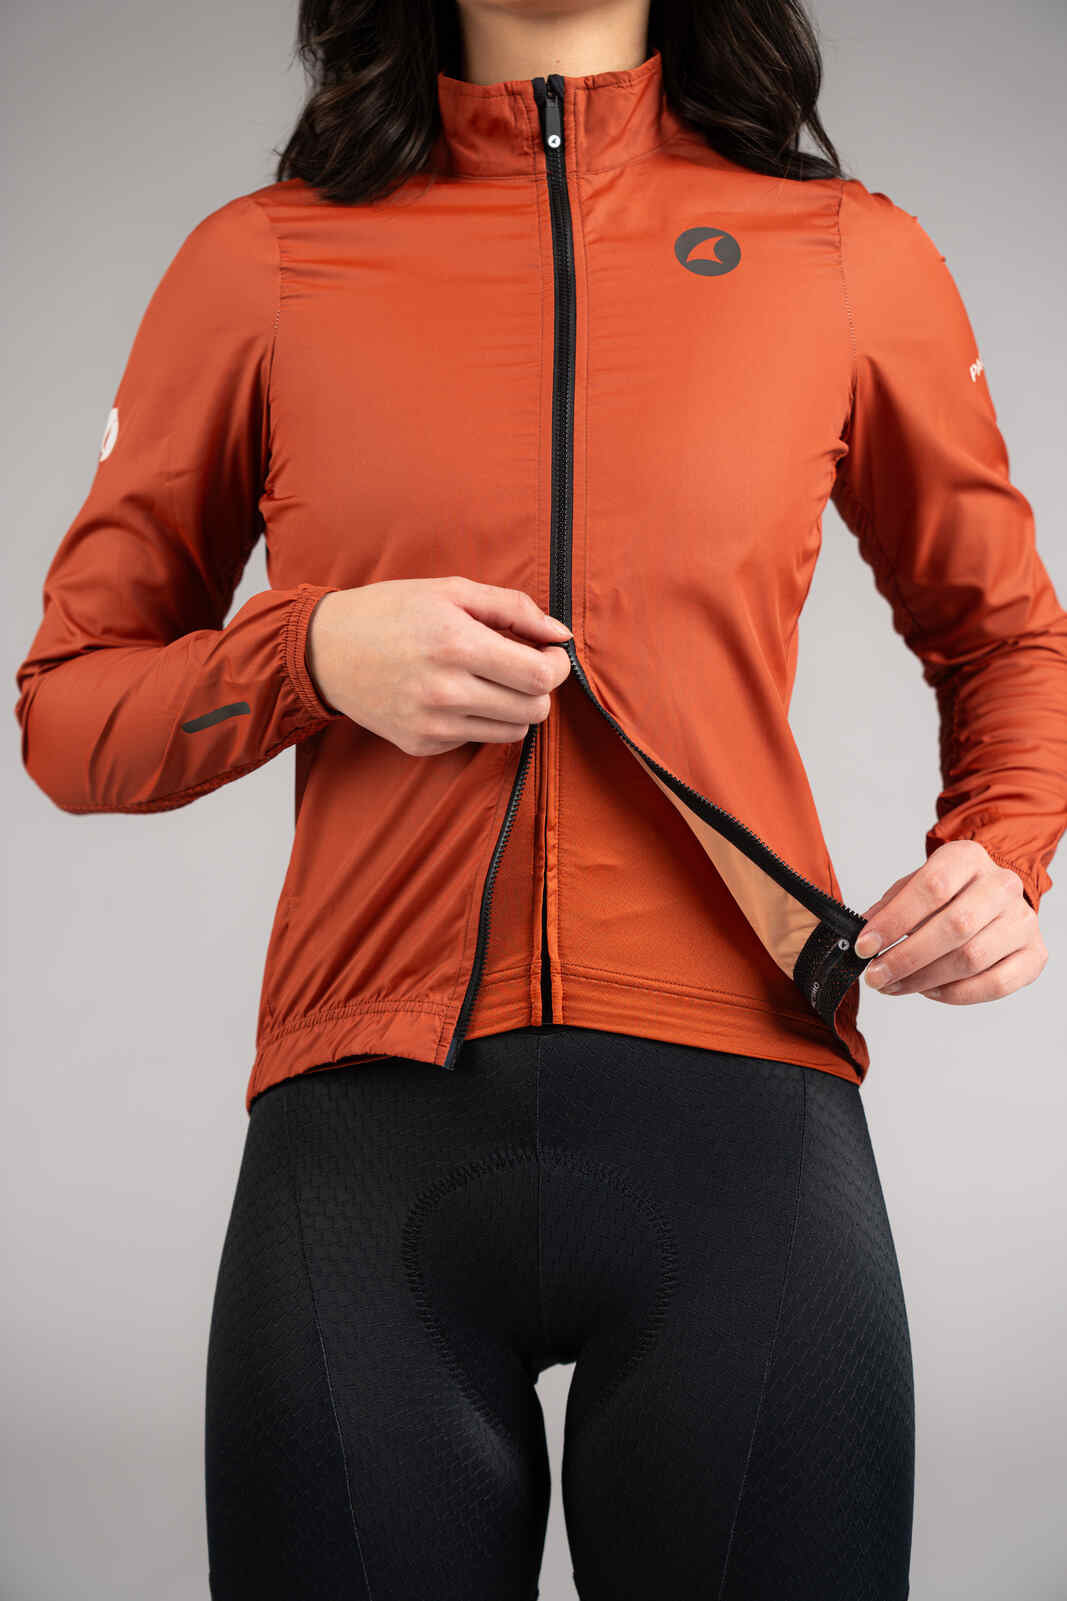 Women's Burnt Orange Packable Cycling Wind Jacket - Two-Way Zipper